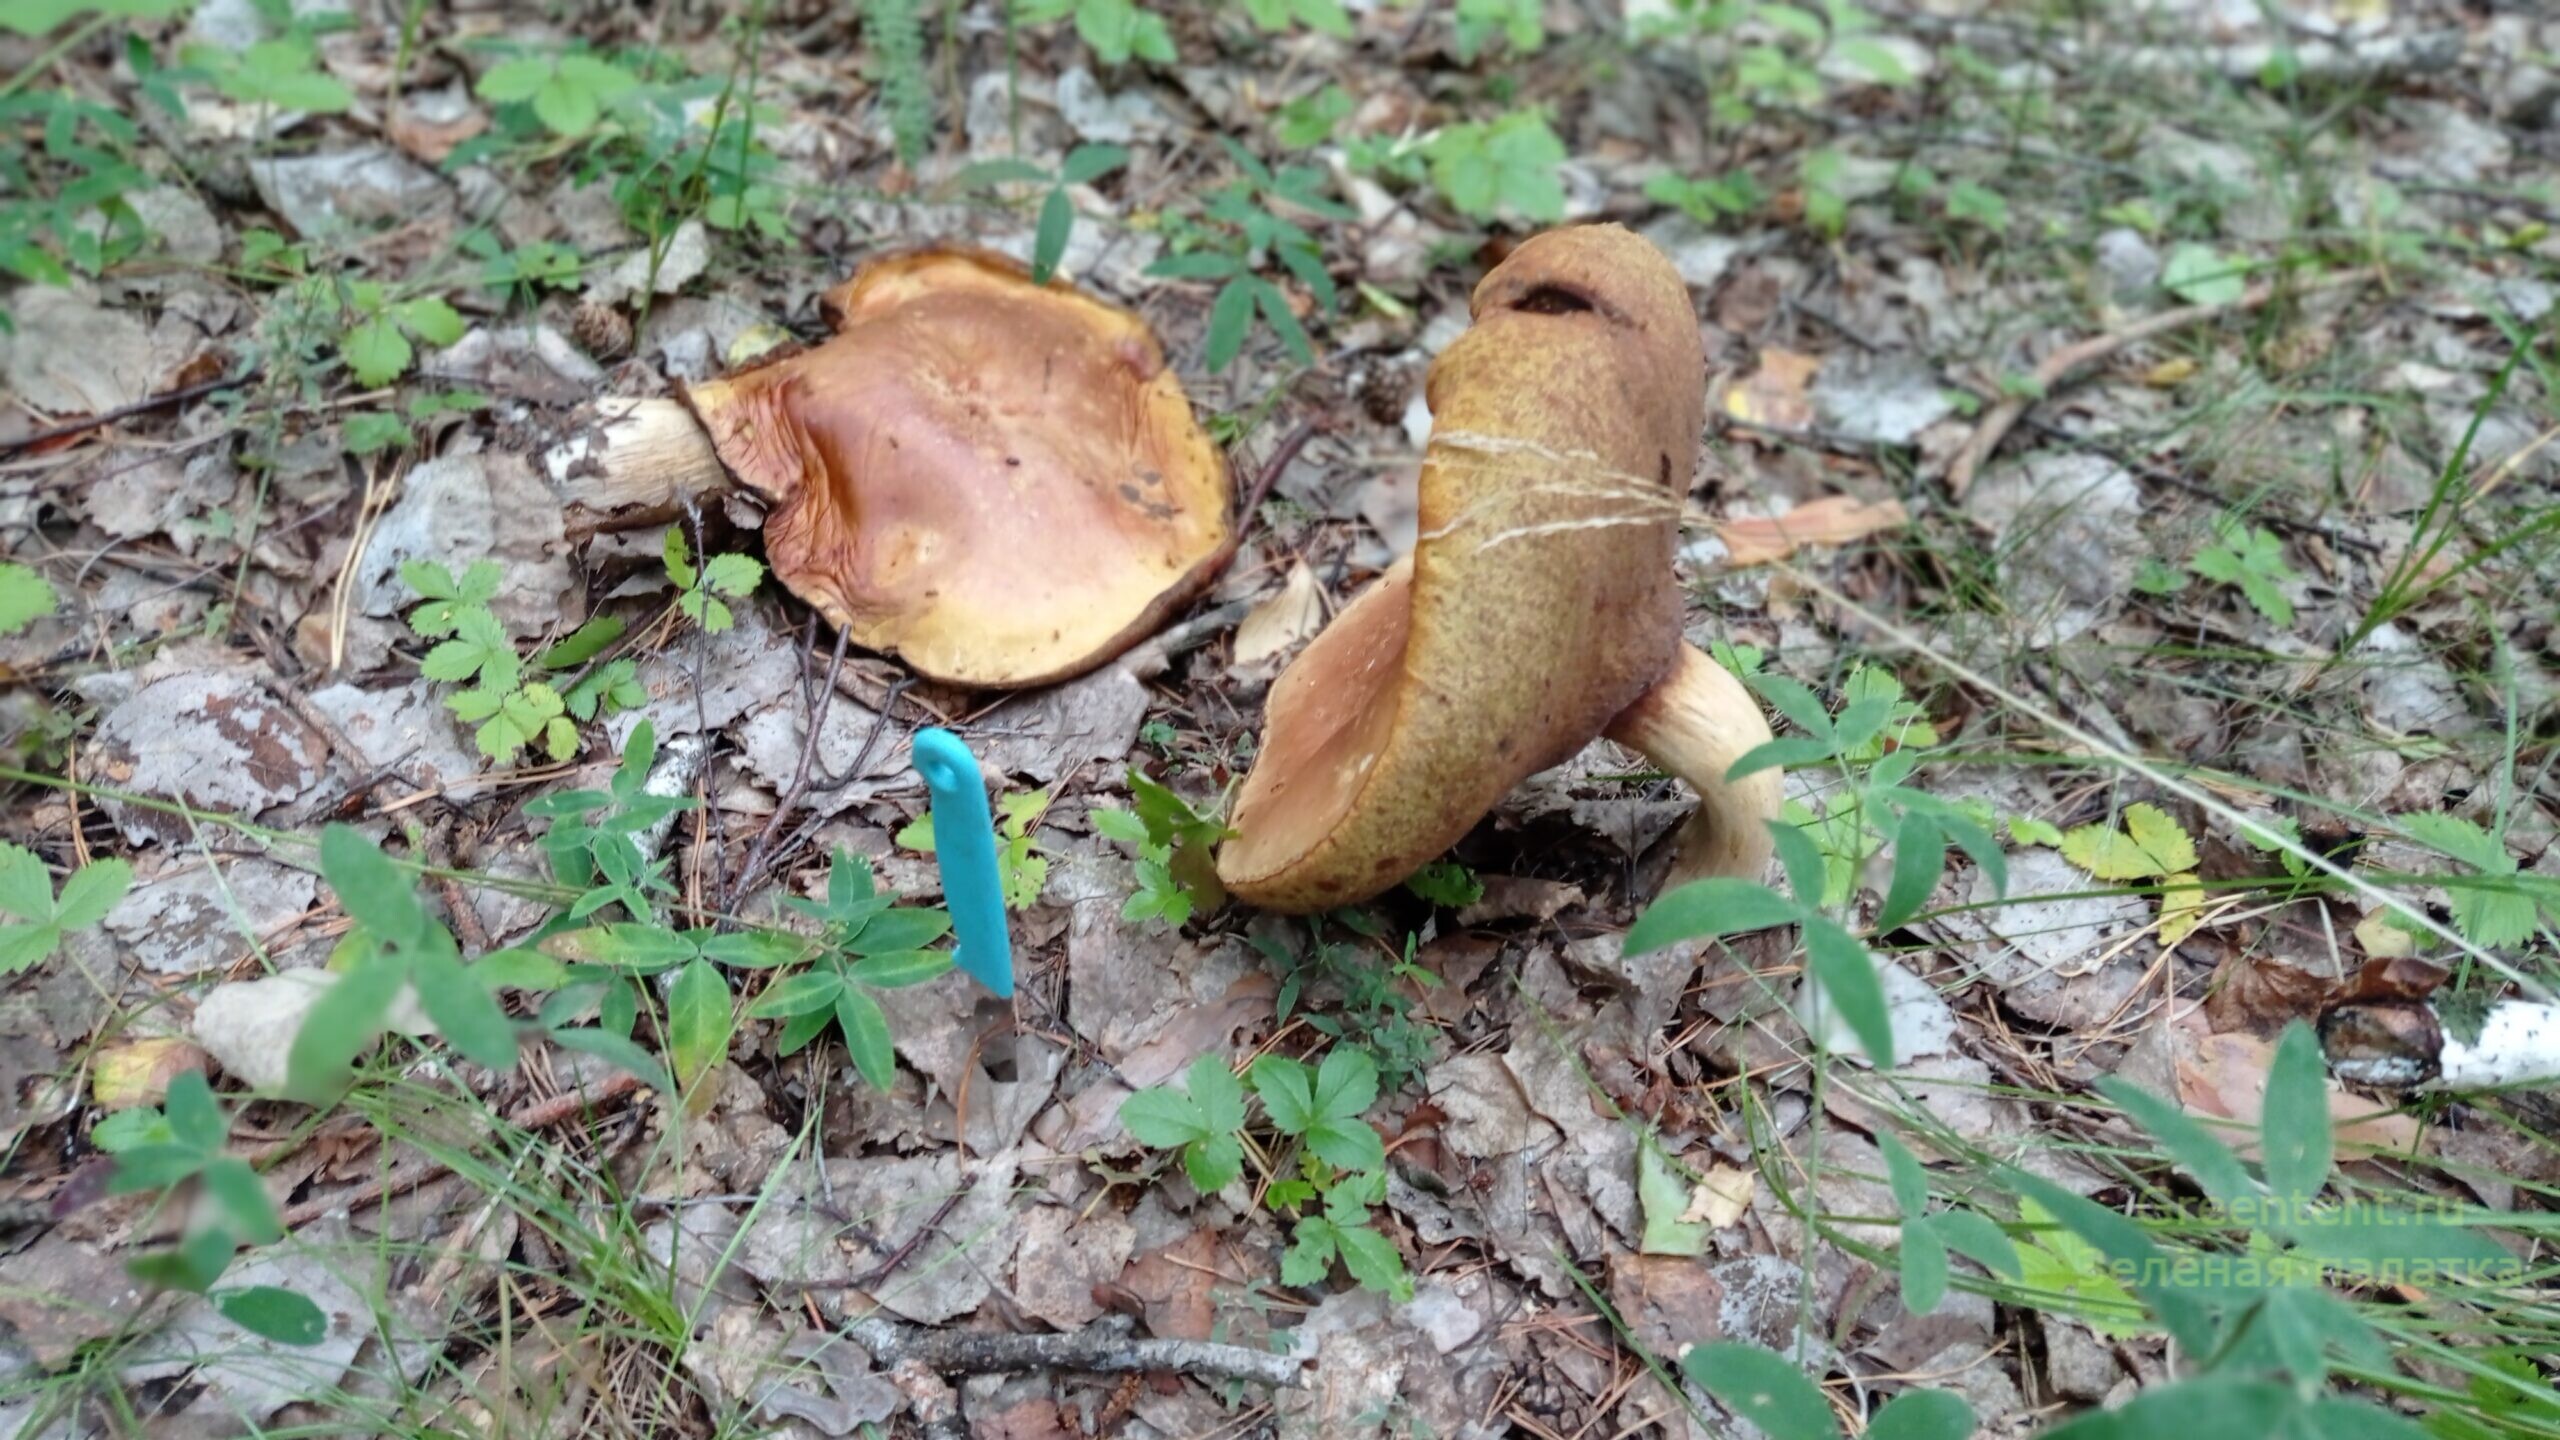 собирать грибы тихая охота гриб гигант лес природа отдых